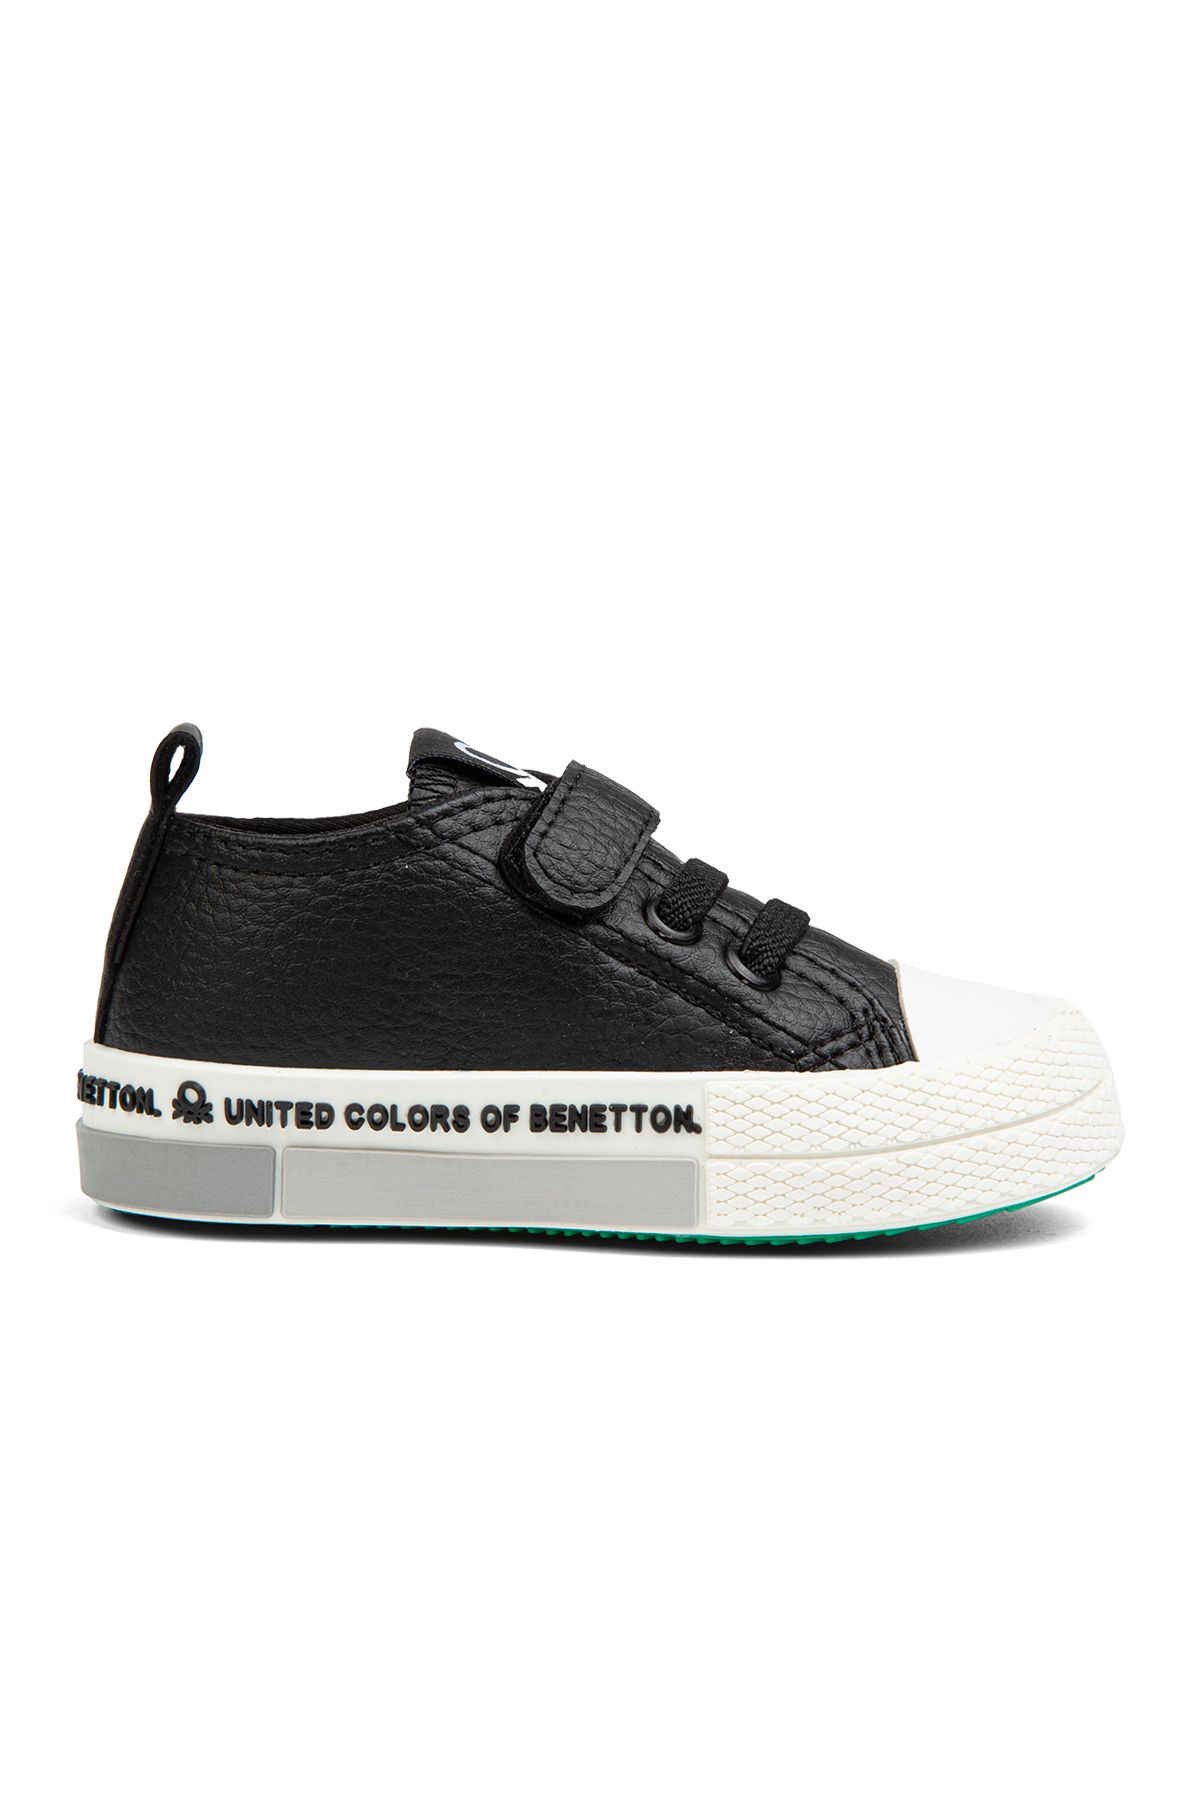 Benetton ® | BN-30803- Siyah - Çocuk Spor Ayakkabı